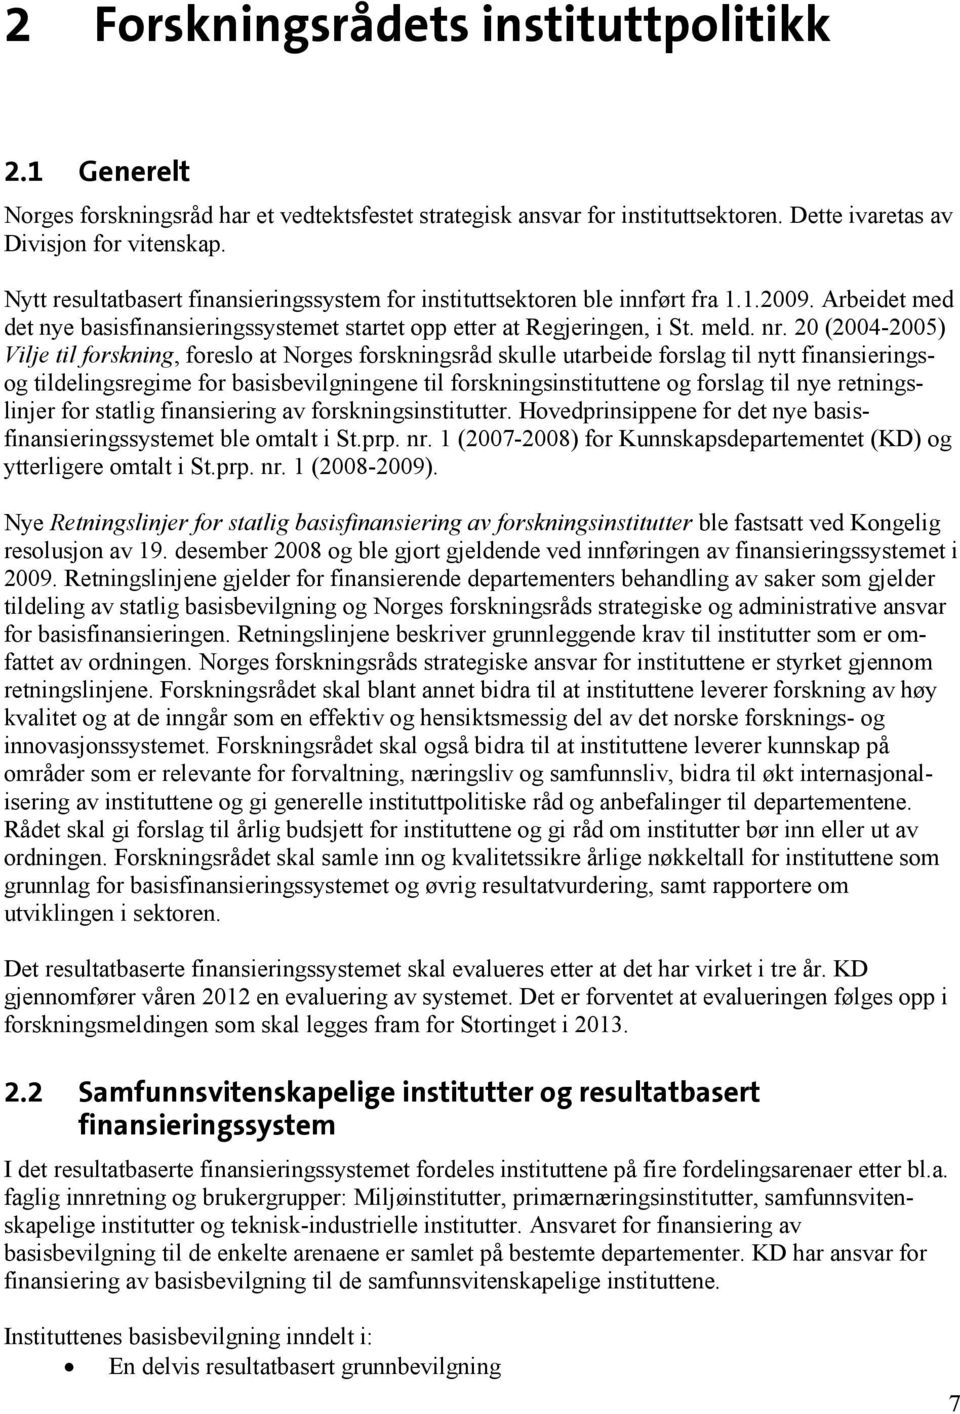 20 (2004-2005) Vilje til forskning, foreslo at Norges forskningsråd skulle utarbeide forslag til nytt finansieringsog tildelingsregime for basisbevilgningene til forskningsinstituttene og forslag til